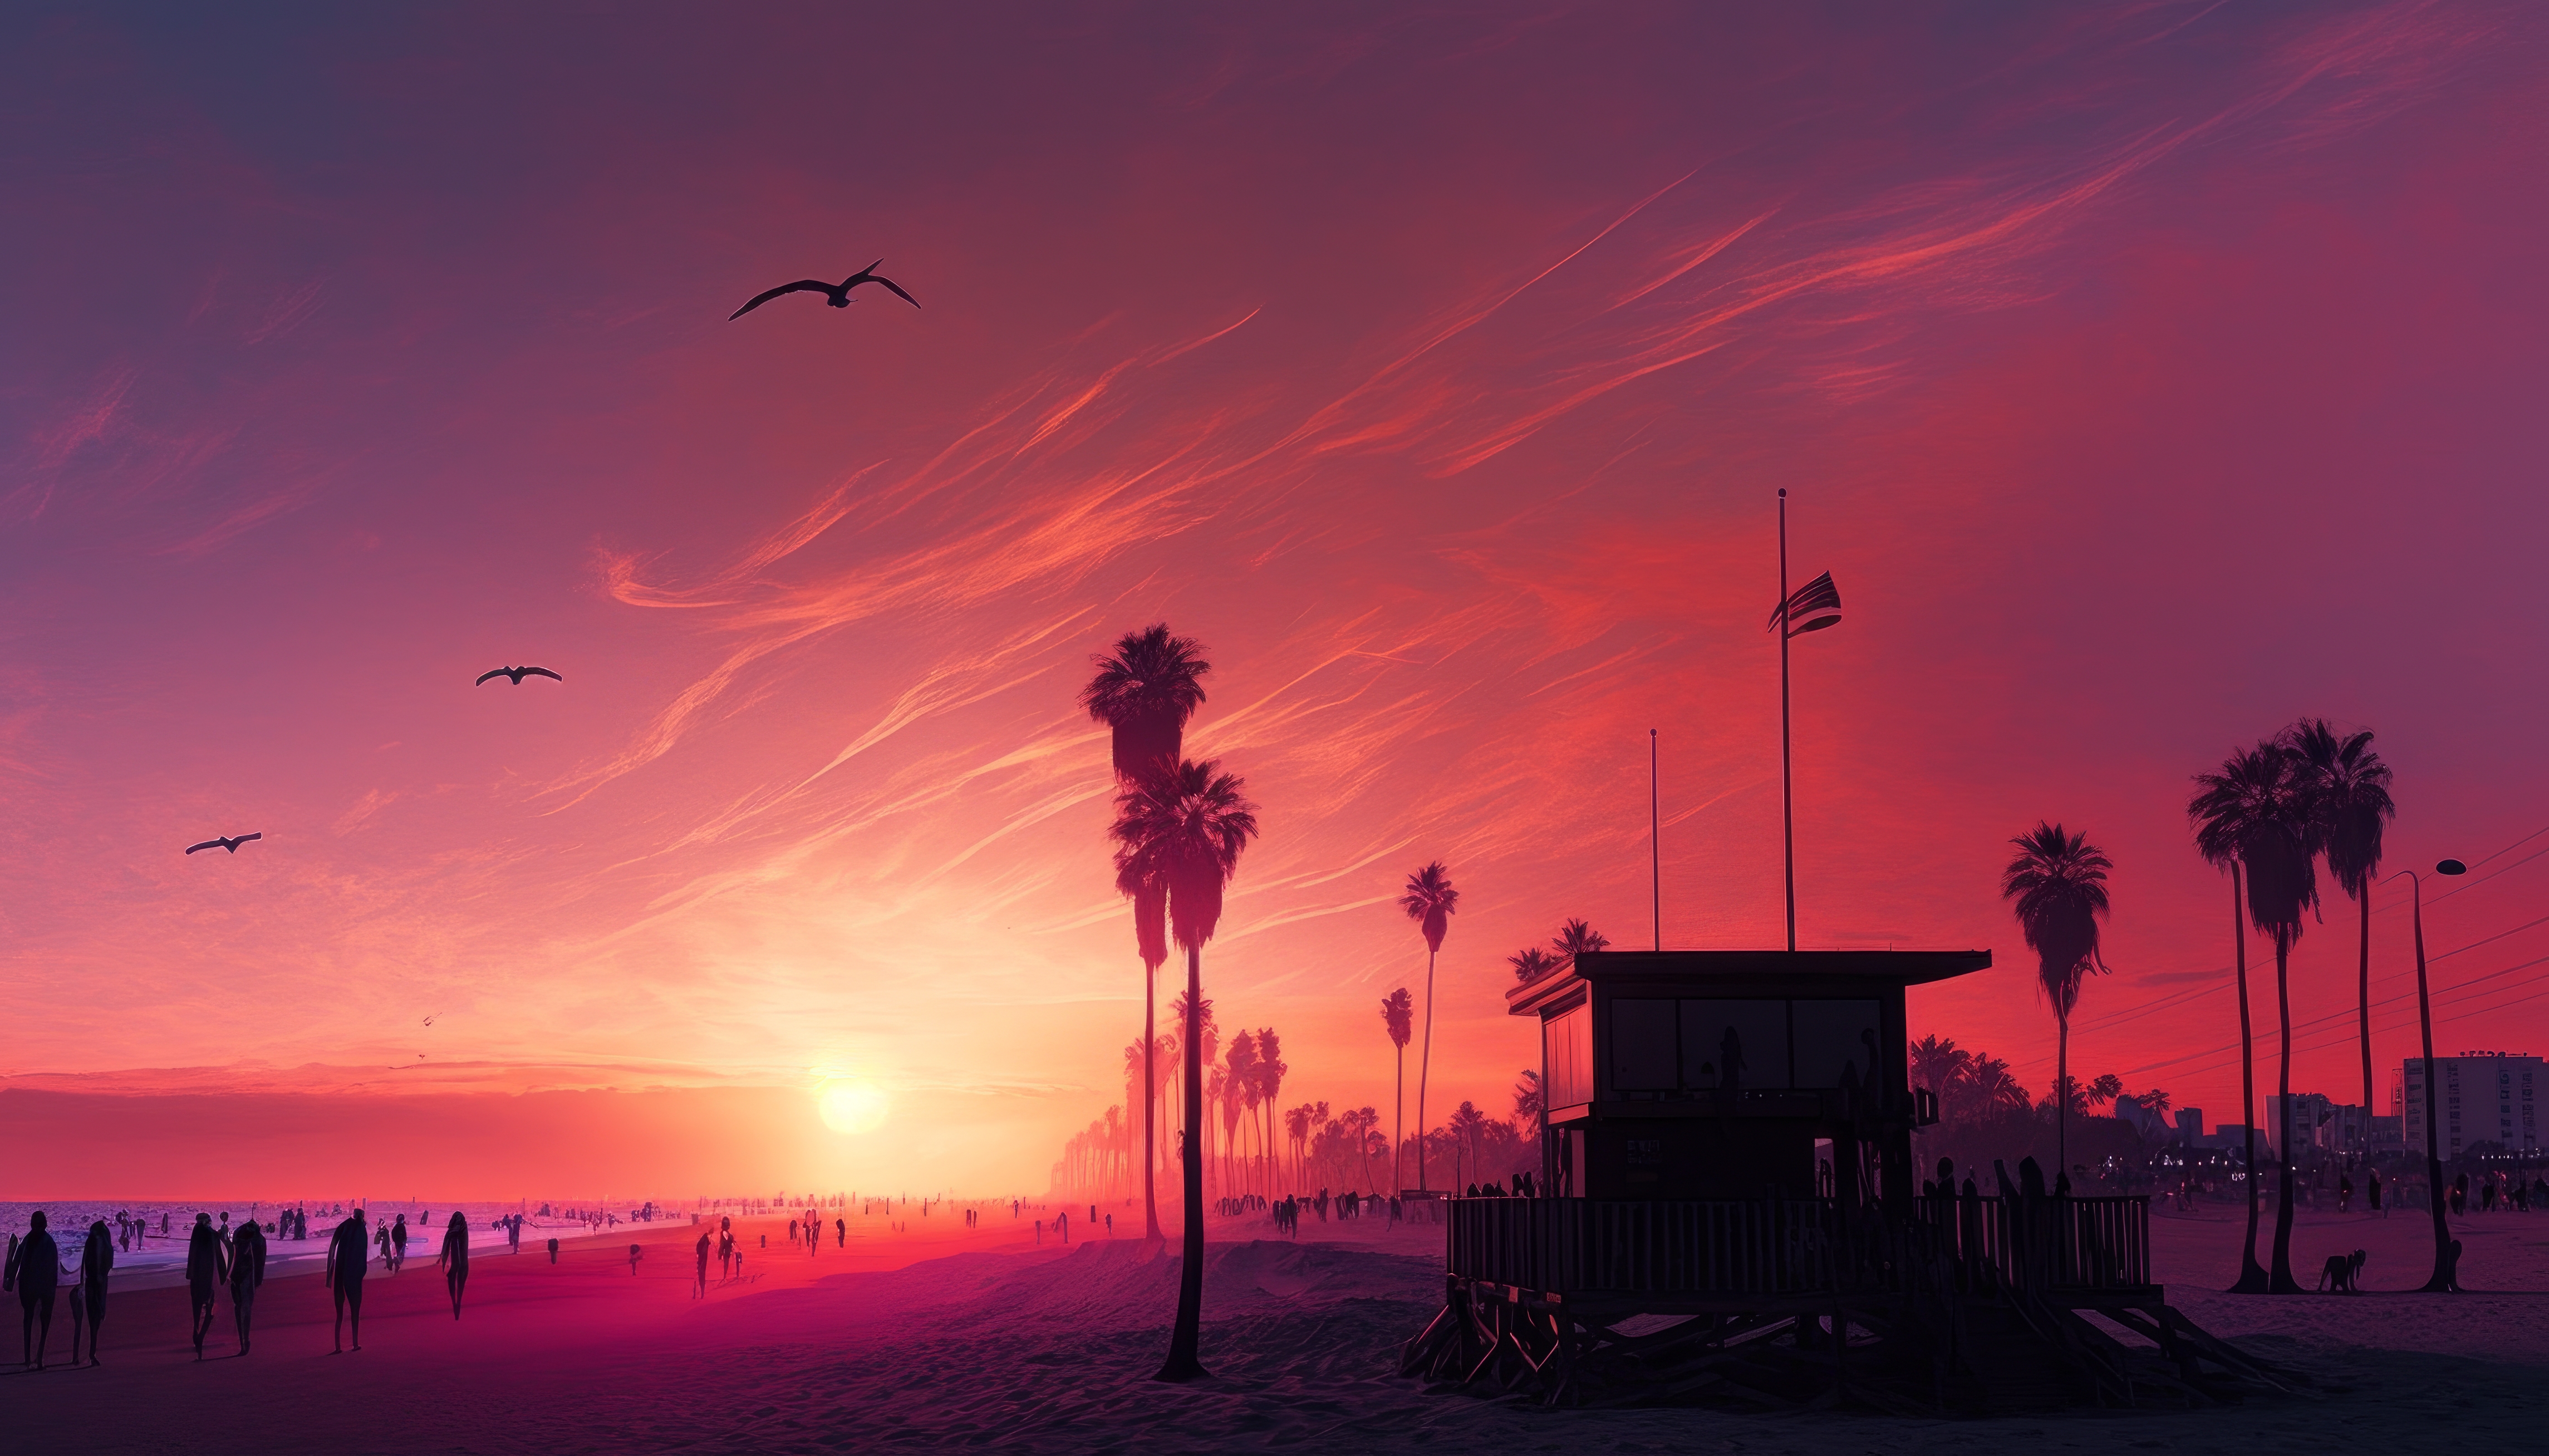 San Diego California sunset landscape wallpaper  2000x1333  291354   WallpaperUP